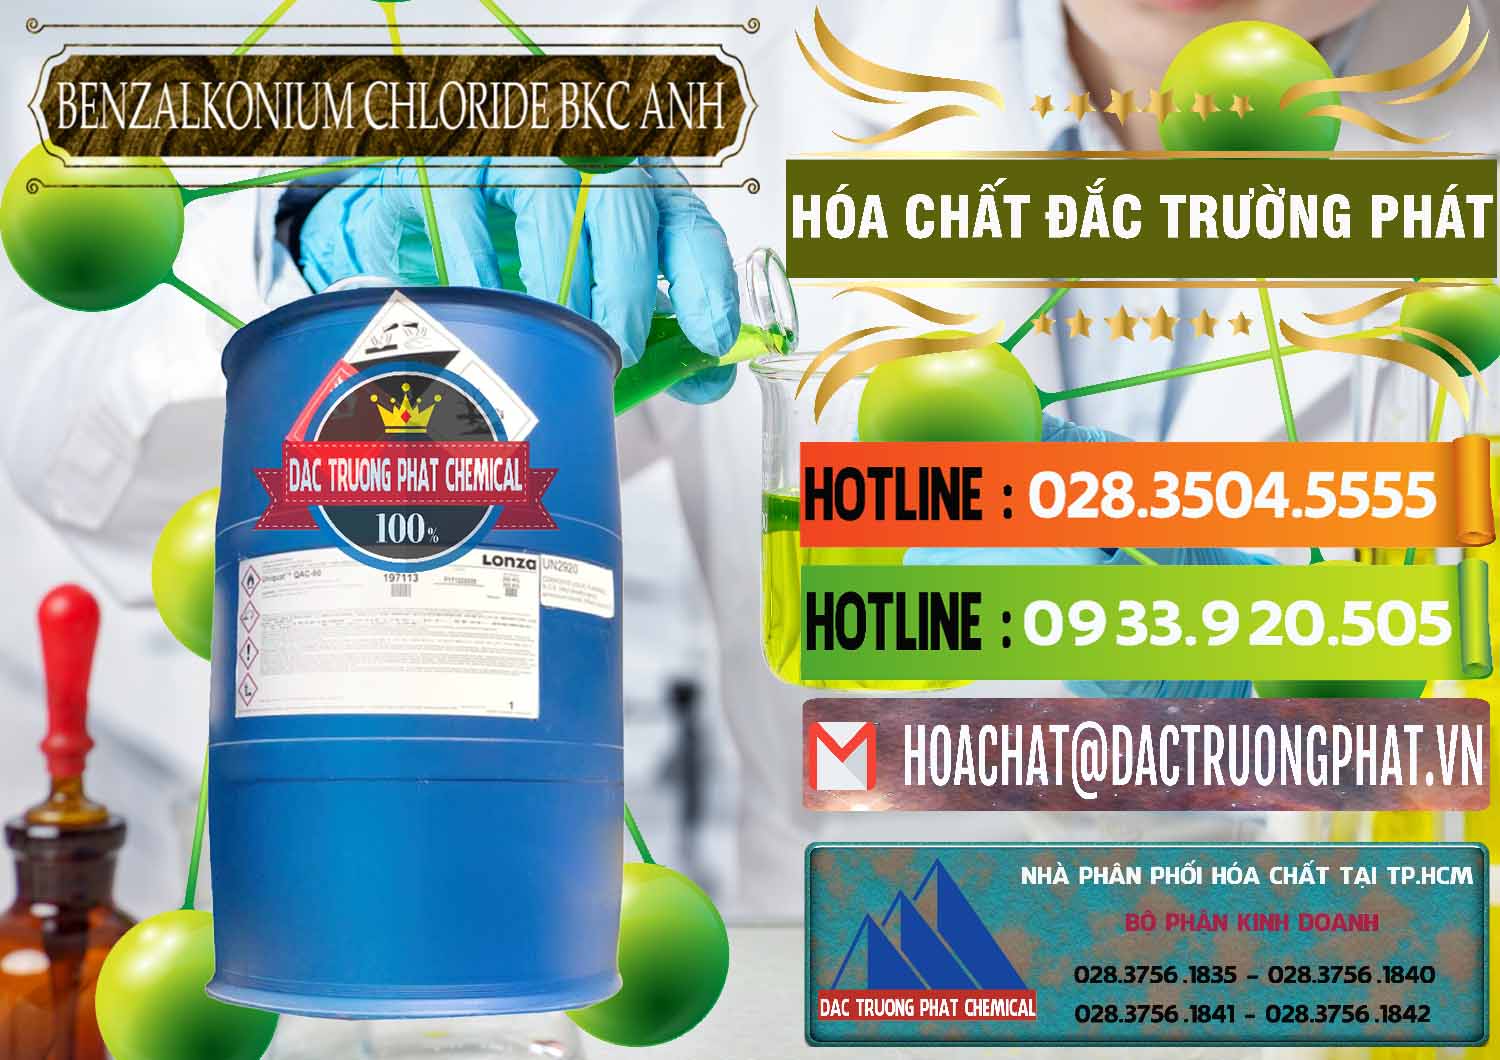 Chuyên cung cấp & bán BKC - Benzalkonium Chloride 80% Anh Quốc Uk Kingdoms - 0457 - Chuyên nhập khẩu & cung cấp hóa chất tại TP.HCM - cungcaphoachat.com.vn